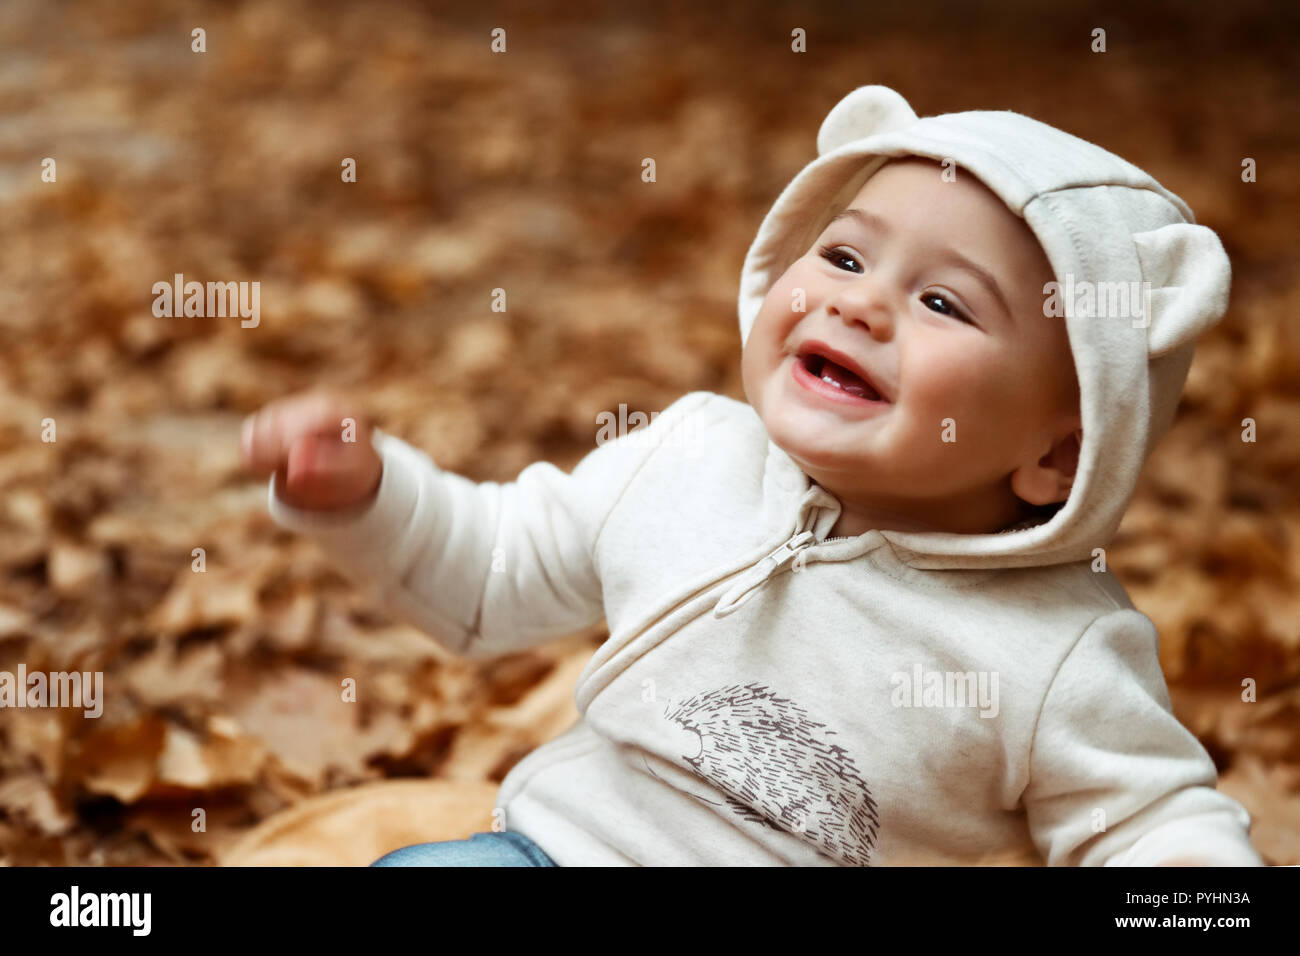 Porträt einer fröhlichen smiling baby Spaß im Herbst Wald, sitzen auf dem Trockenen baum laub, genießen die herbstlichen Urlaub Stockfoto